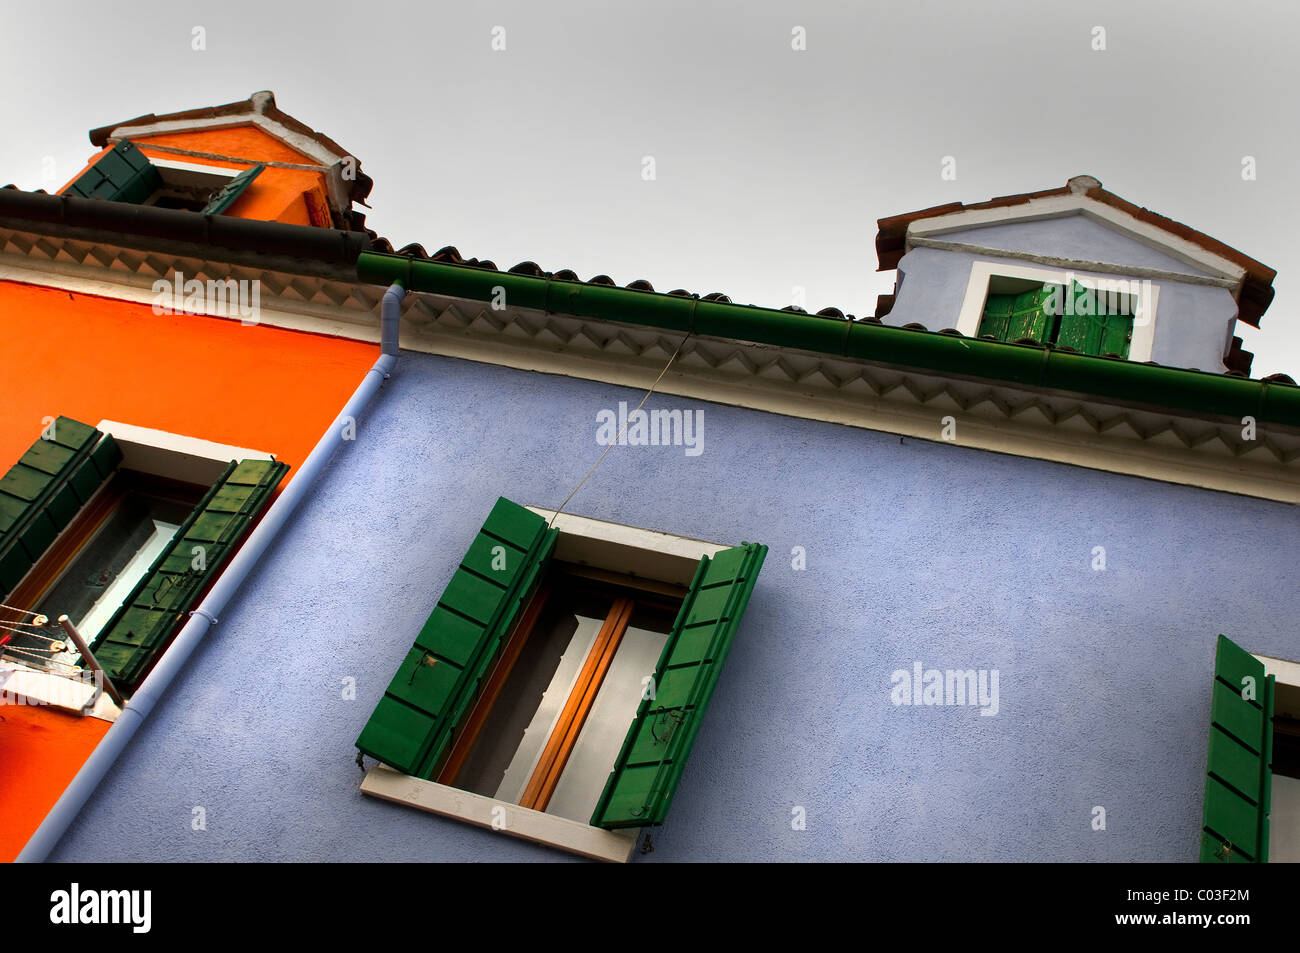 Maisons colorées de Burano Banque D'Images